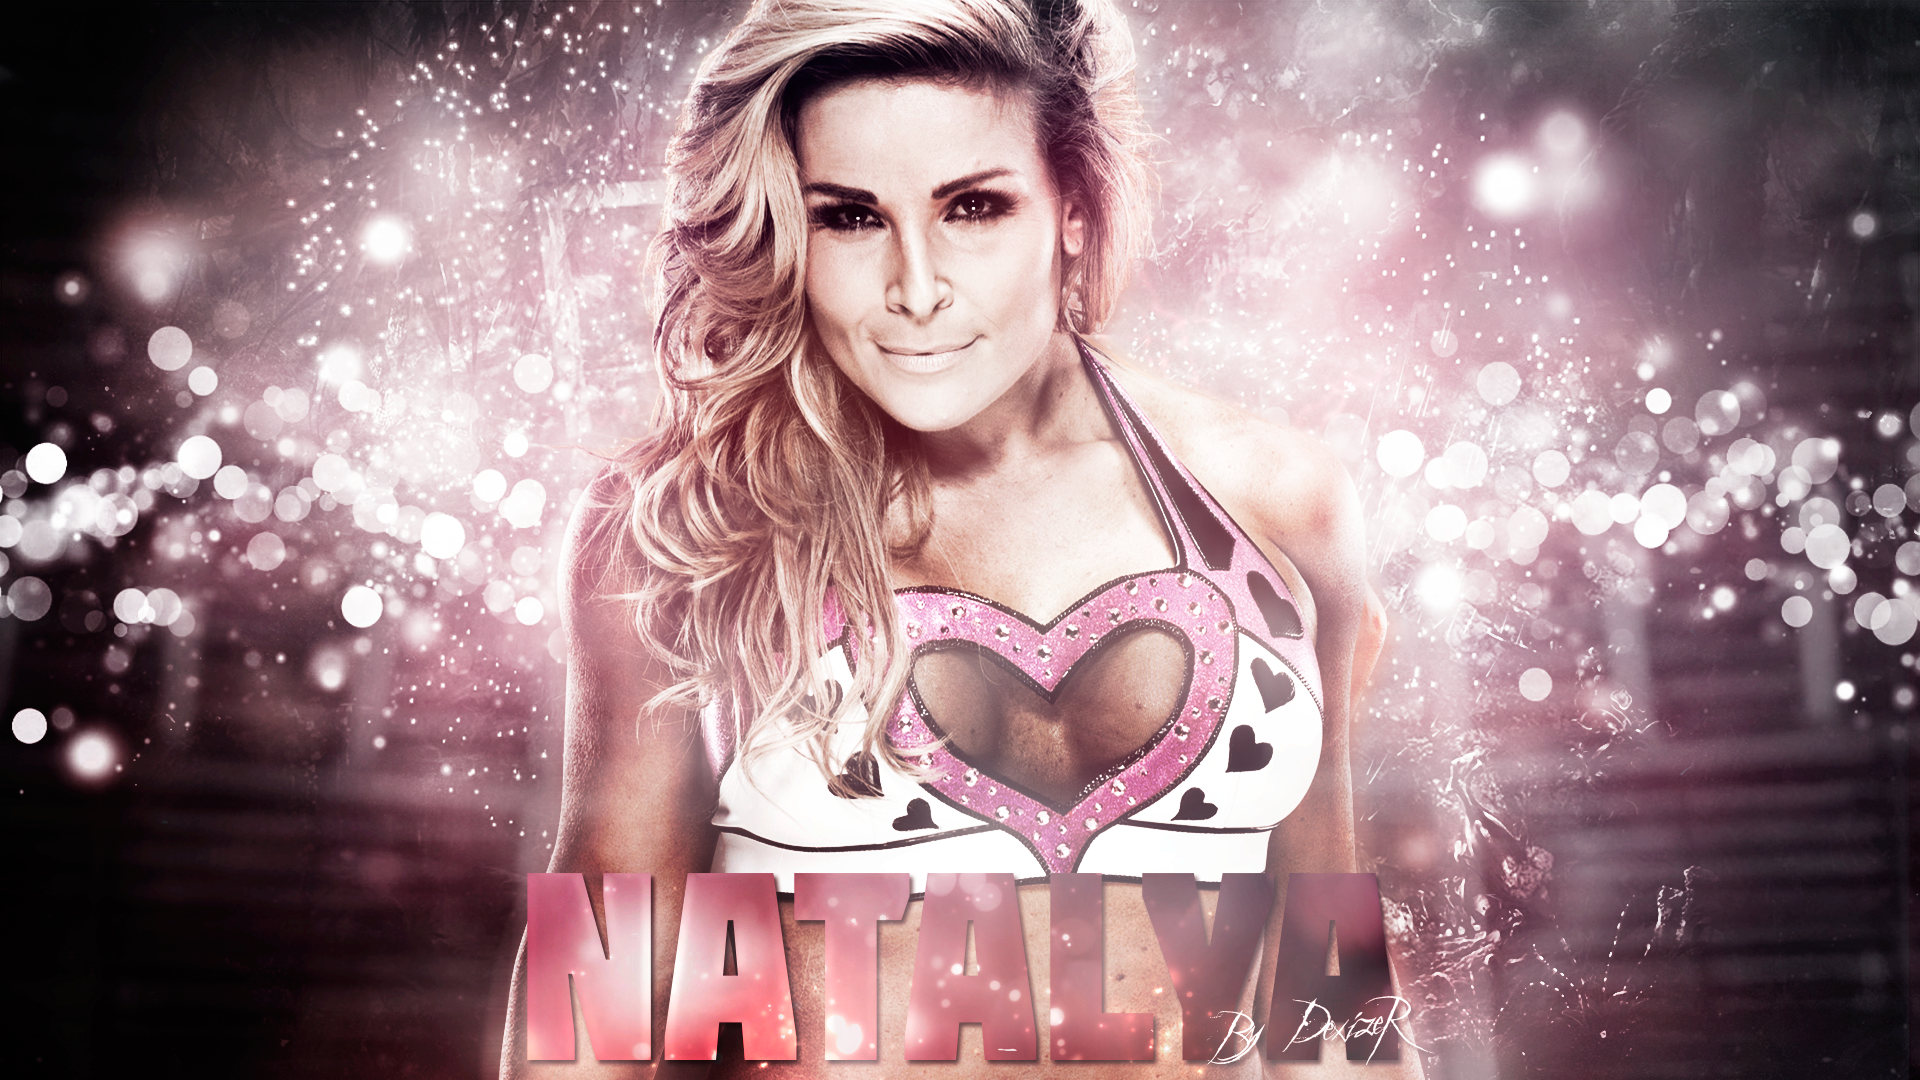 Natalya Wallpaper. Natalya Wallpaper